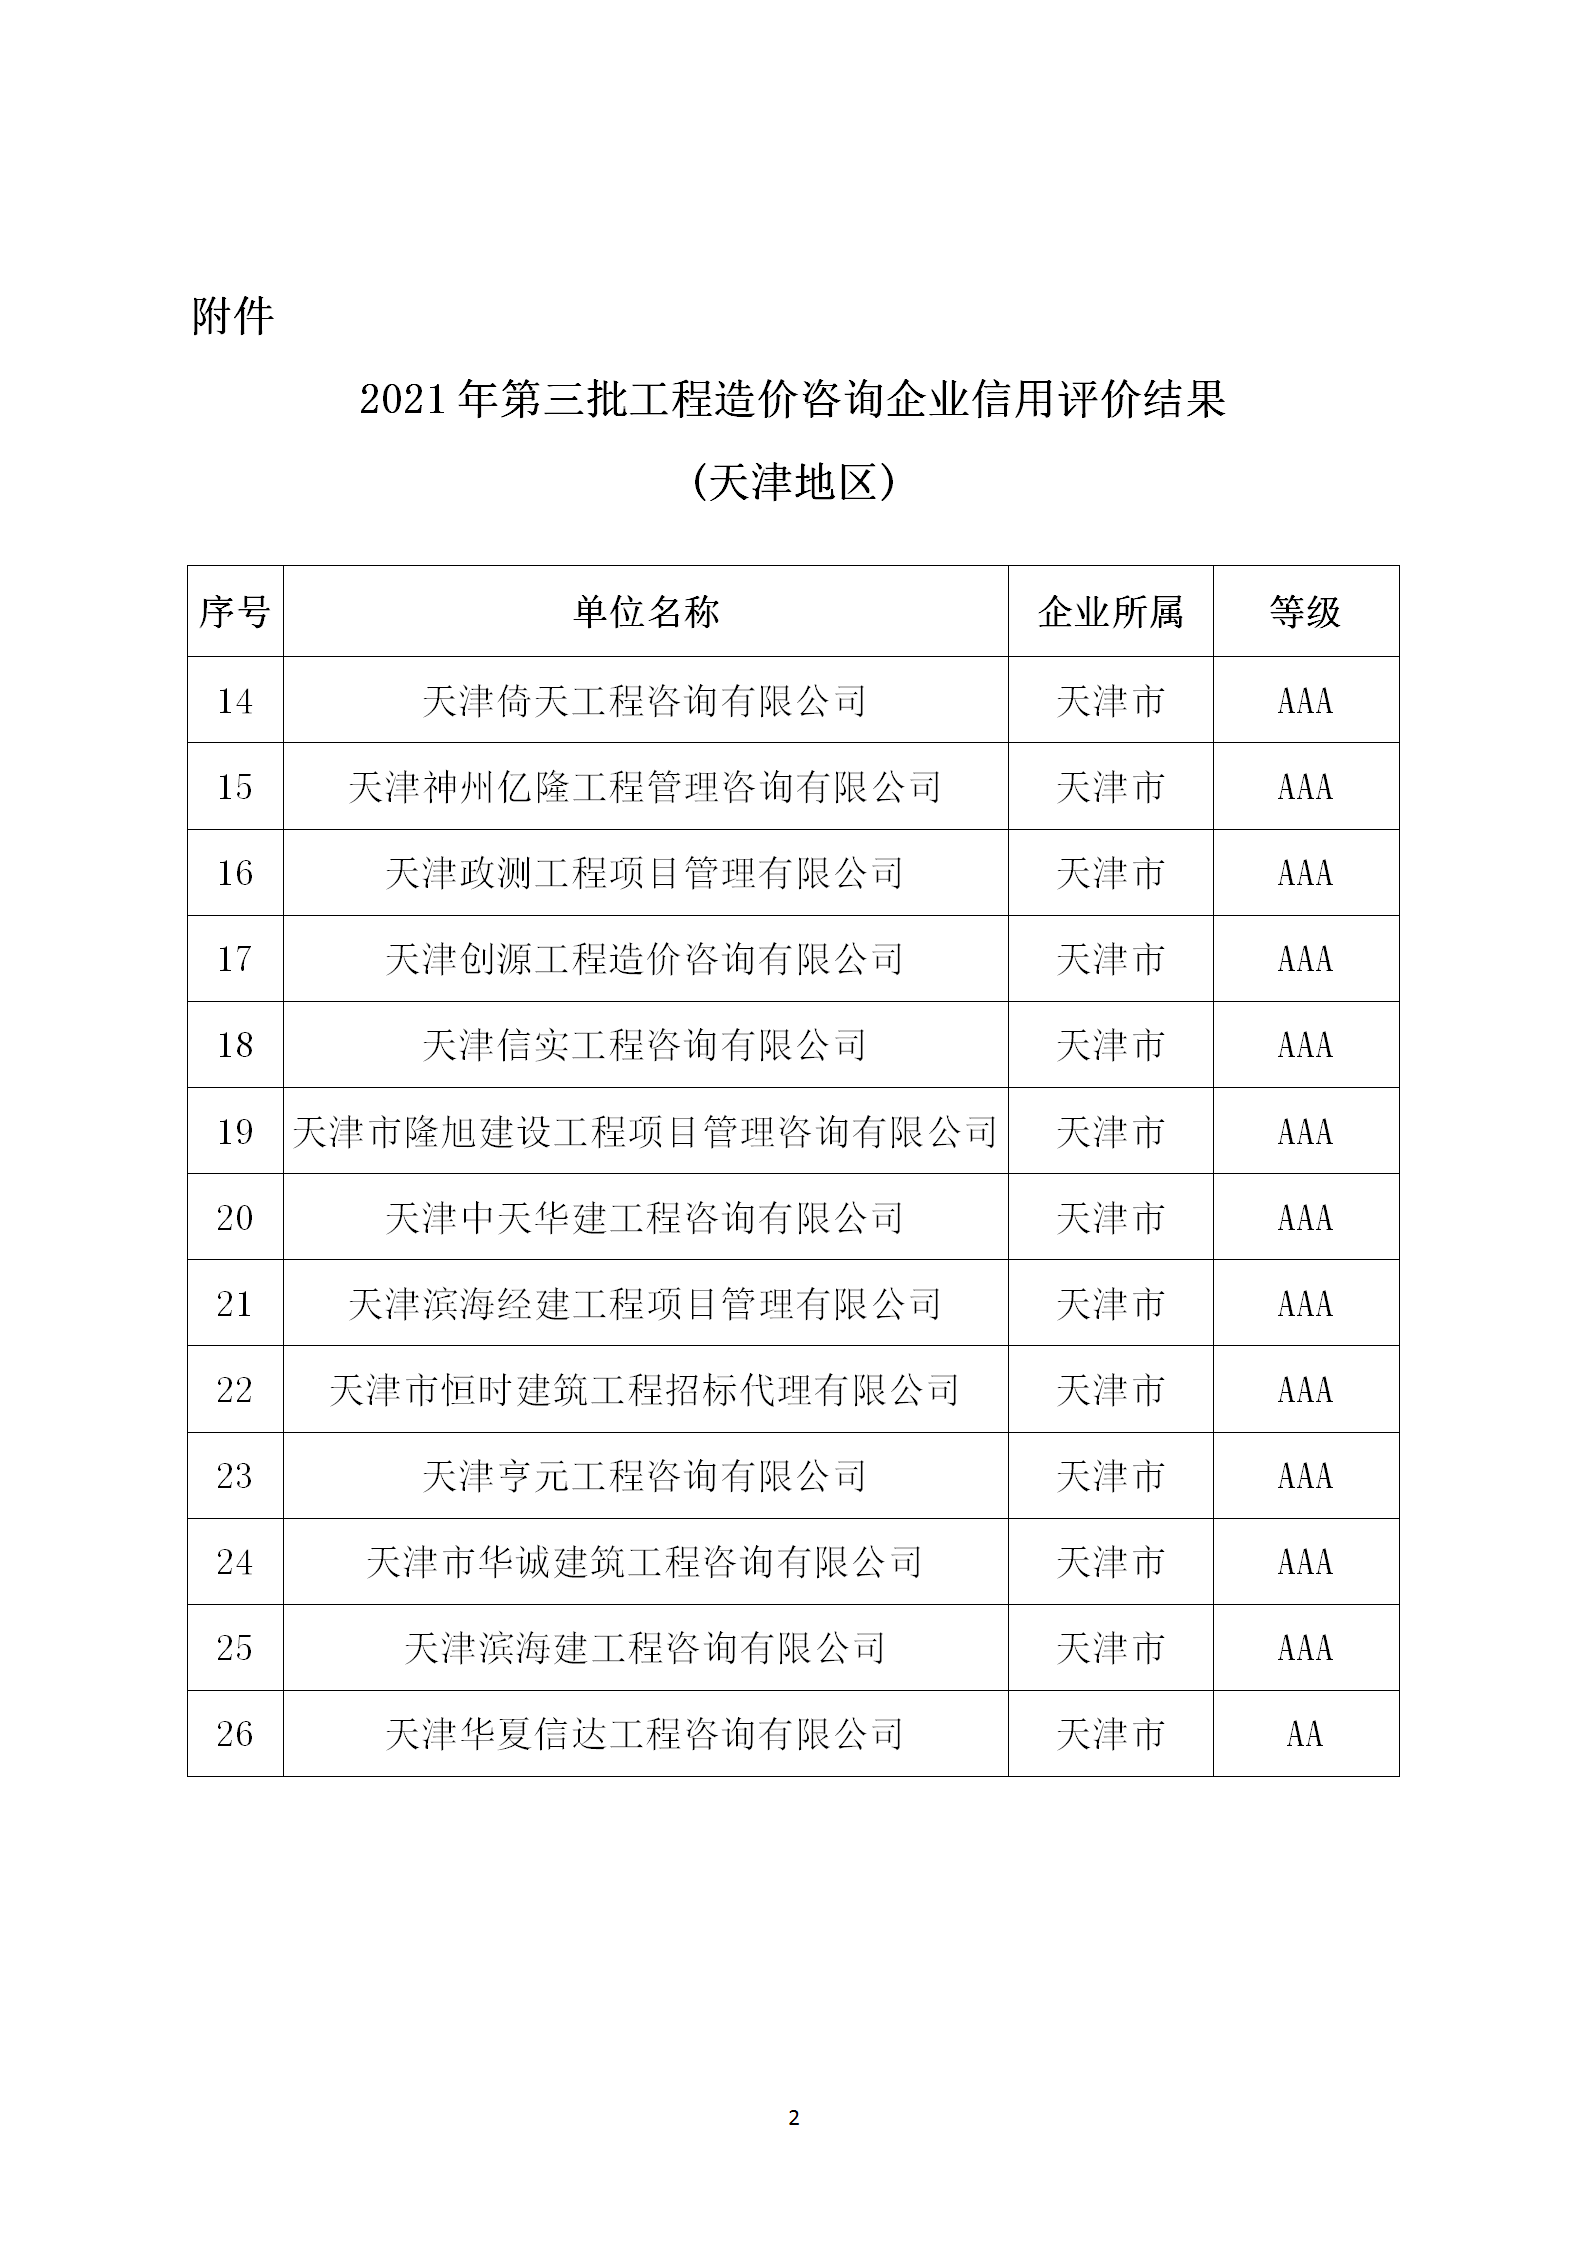 2021年-32号关于转发中国建设工程造价管理协会《关于2021年第三批工程造价咨询企业信用评价结果的公示》的通知(1)_02.png